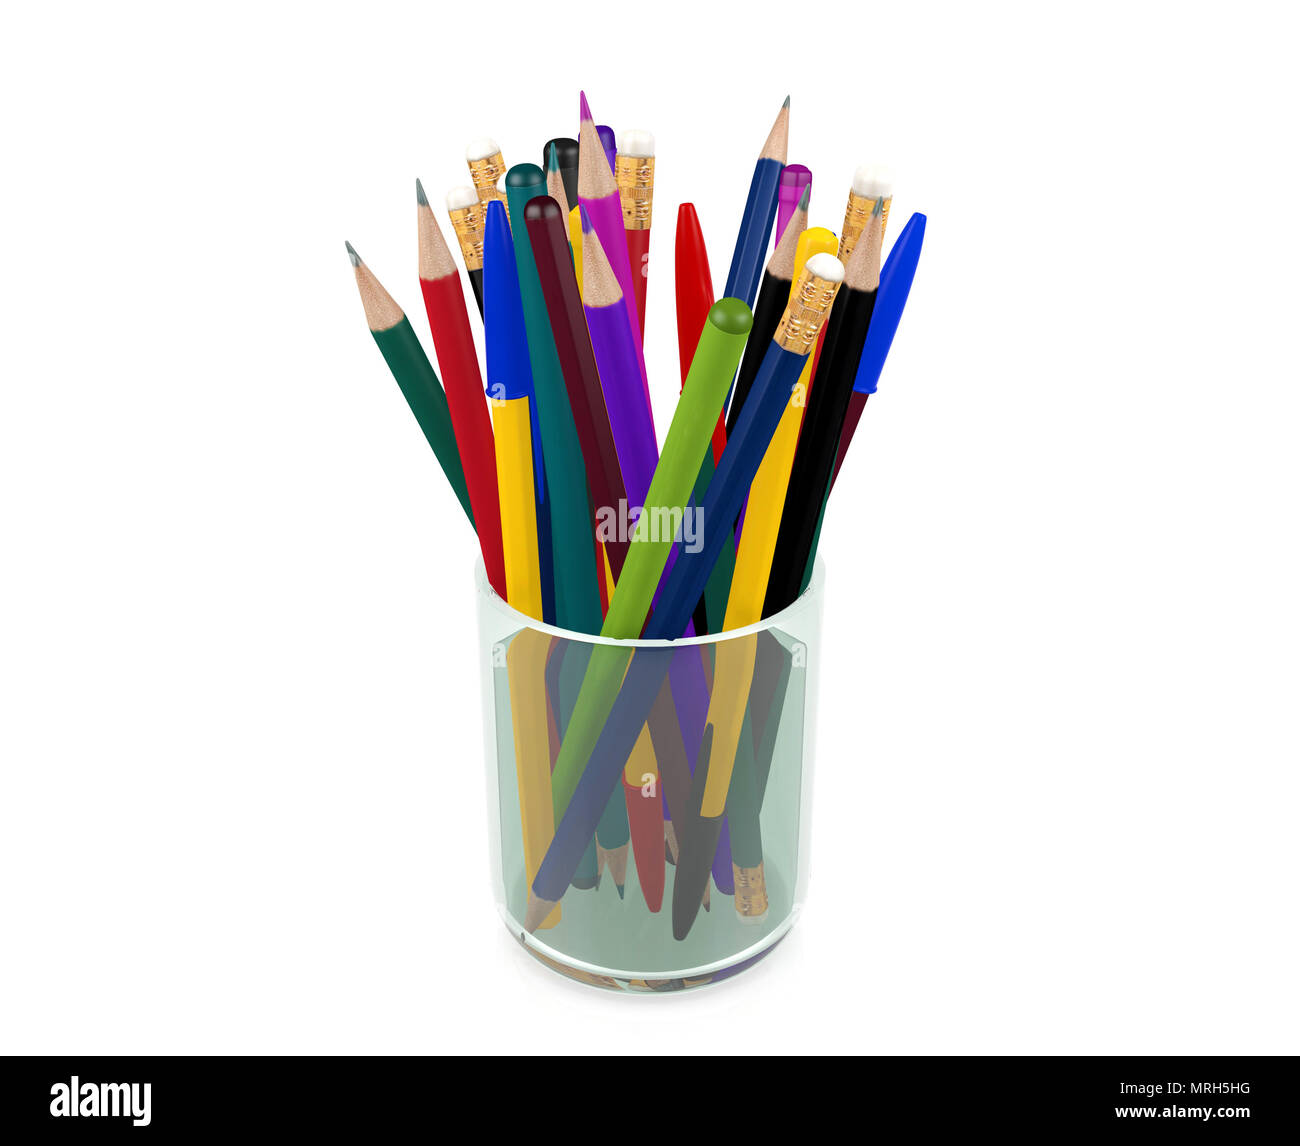 Groupe des stylos, crayons, crayons en verre transparent, éléments de papeterie Banque D'Images